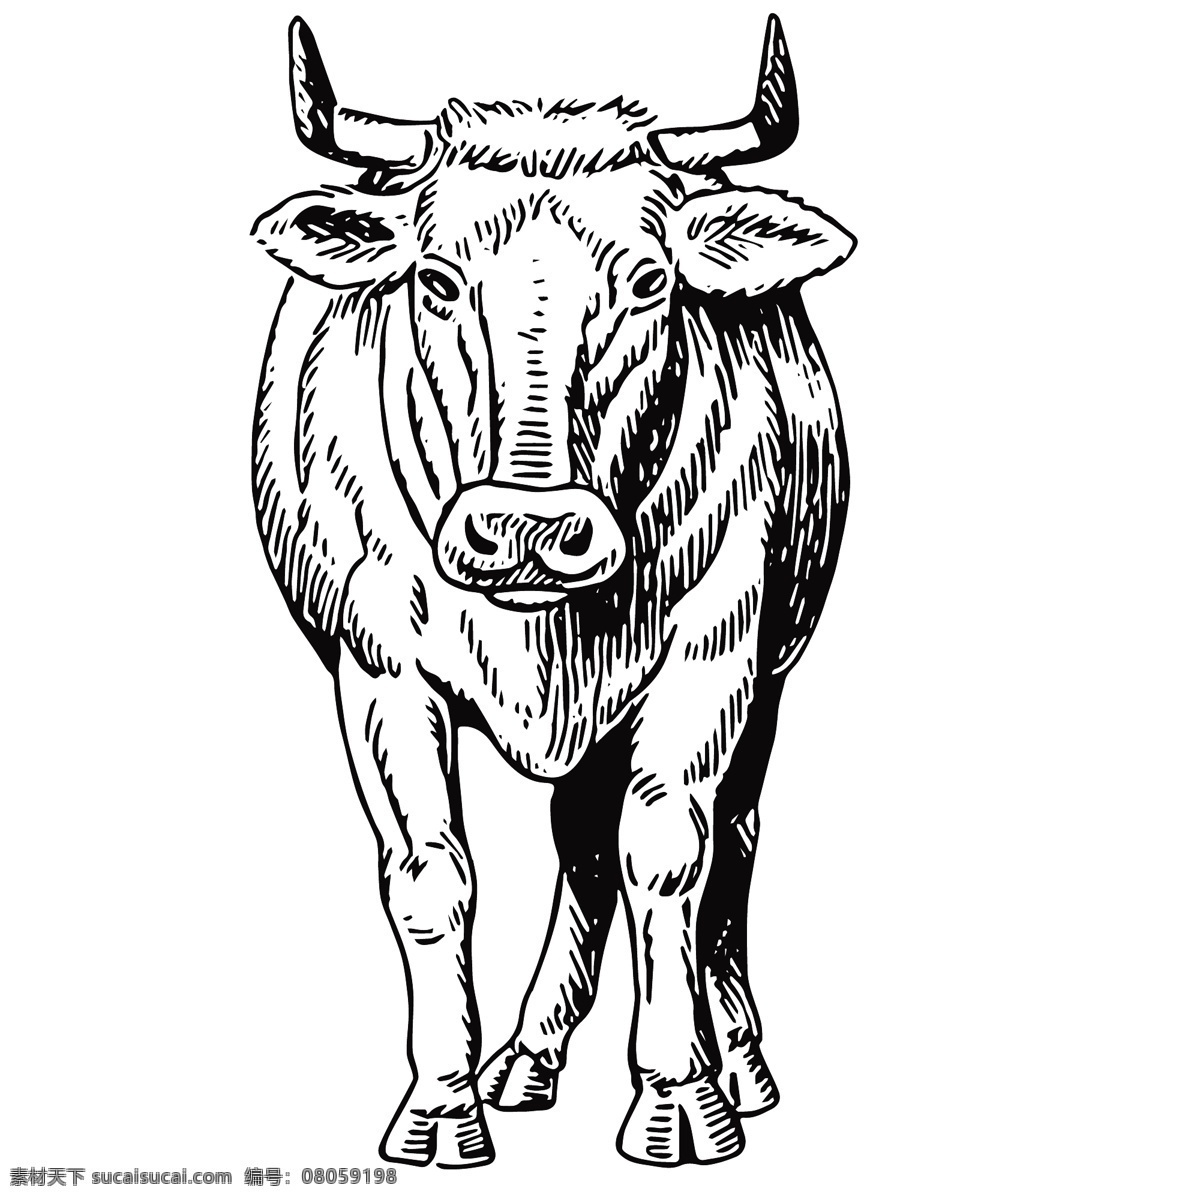 家禽 动物 线 稿 绘画 图案 马 狗 羊 牛 猪 野生动物 素描 创意 插画 图谱 生物 科学研究